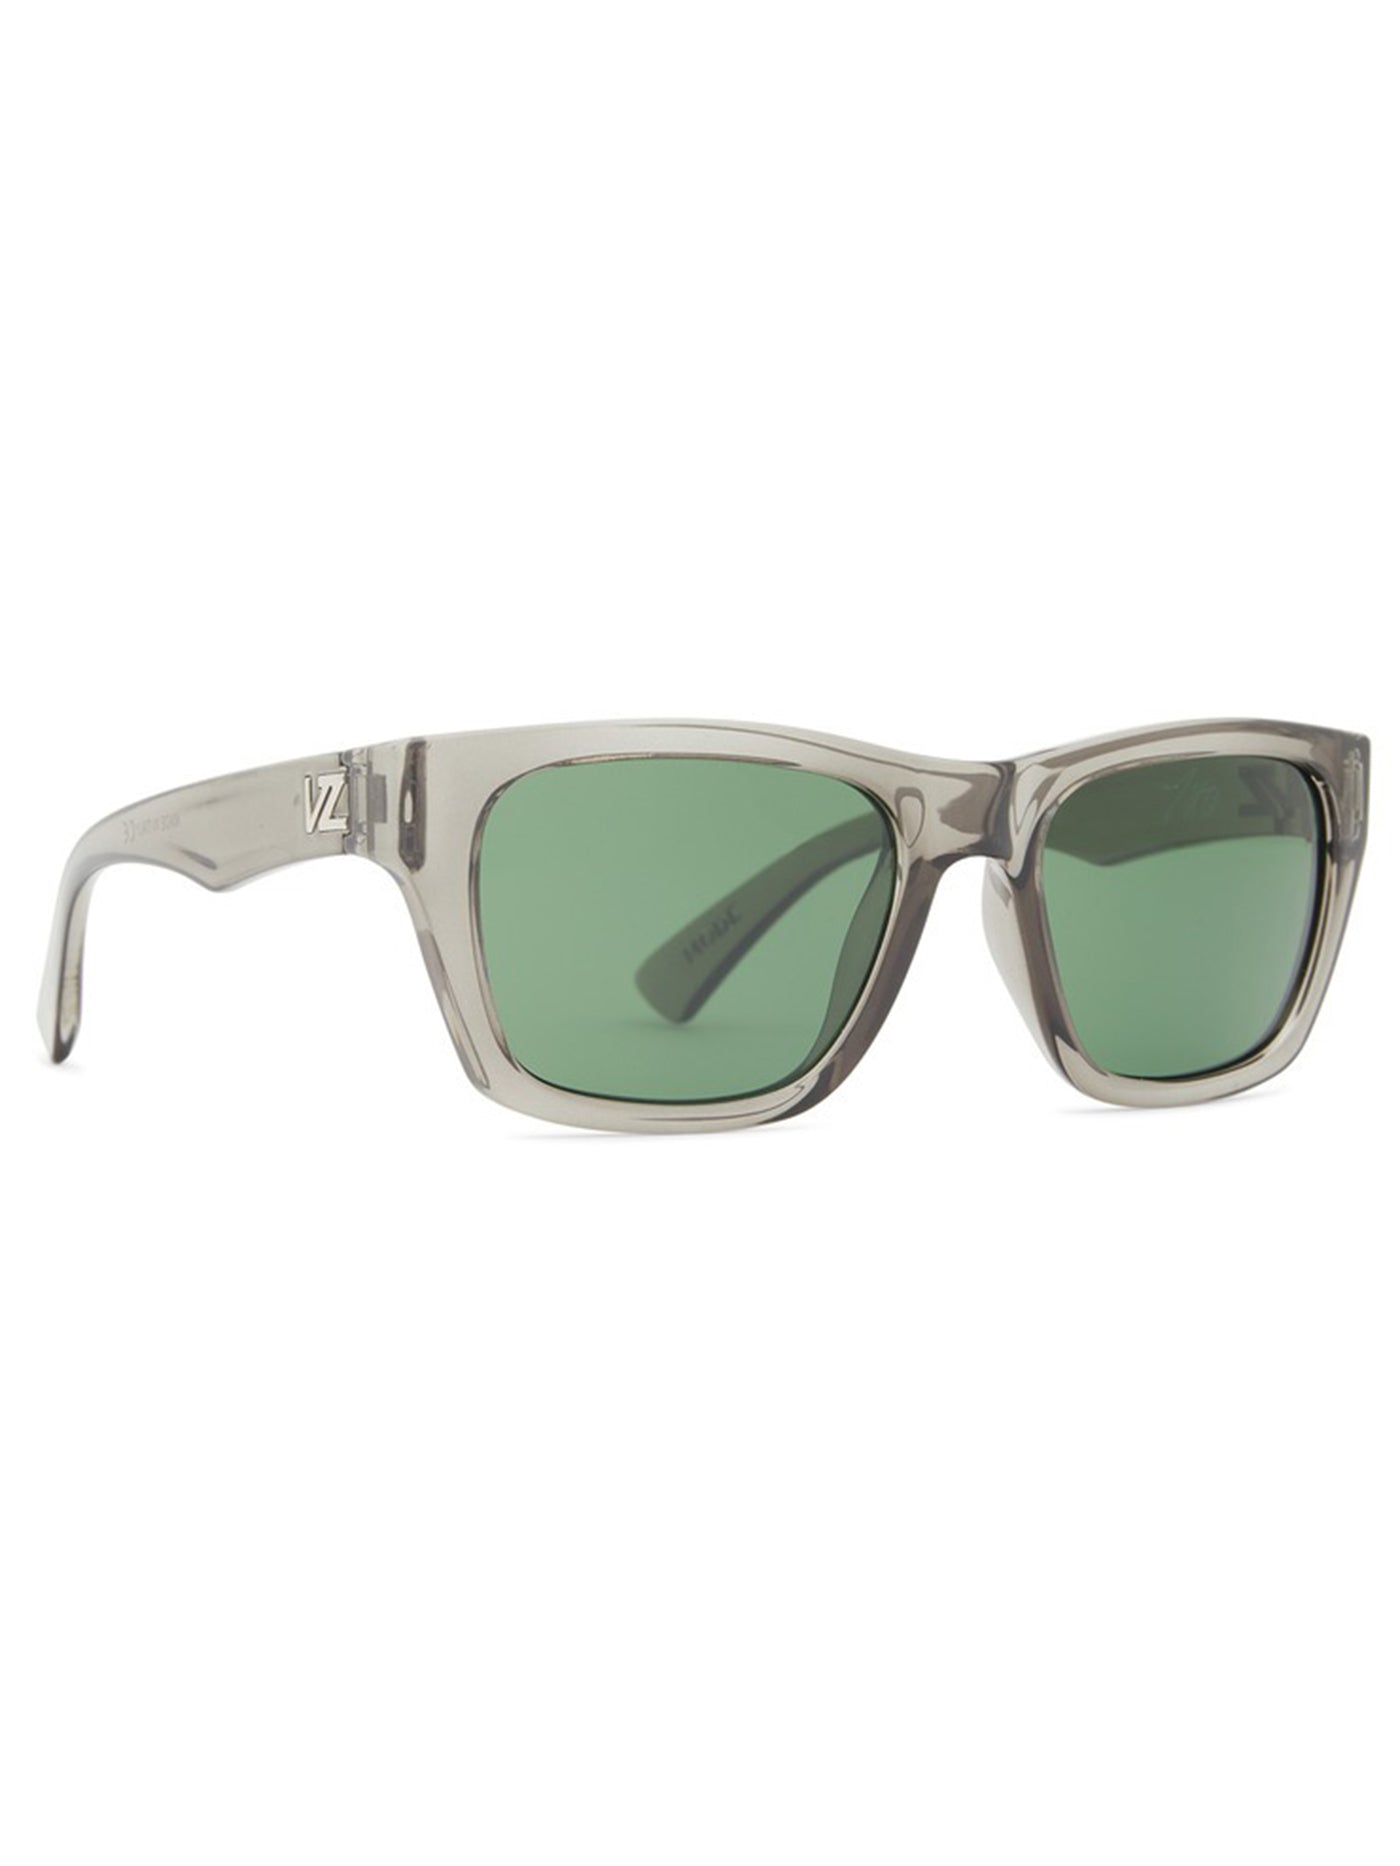 Von Zipper Mode Vintage Grey/Vintage Green Sunglasses